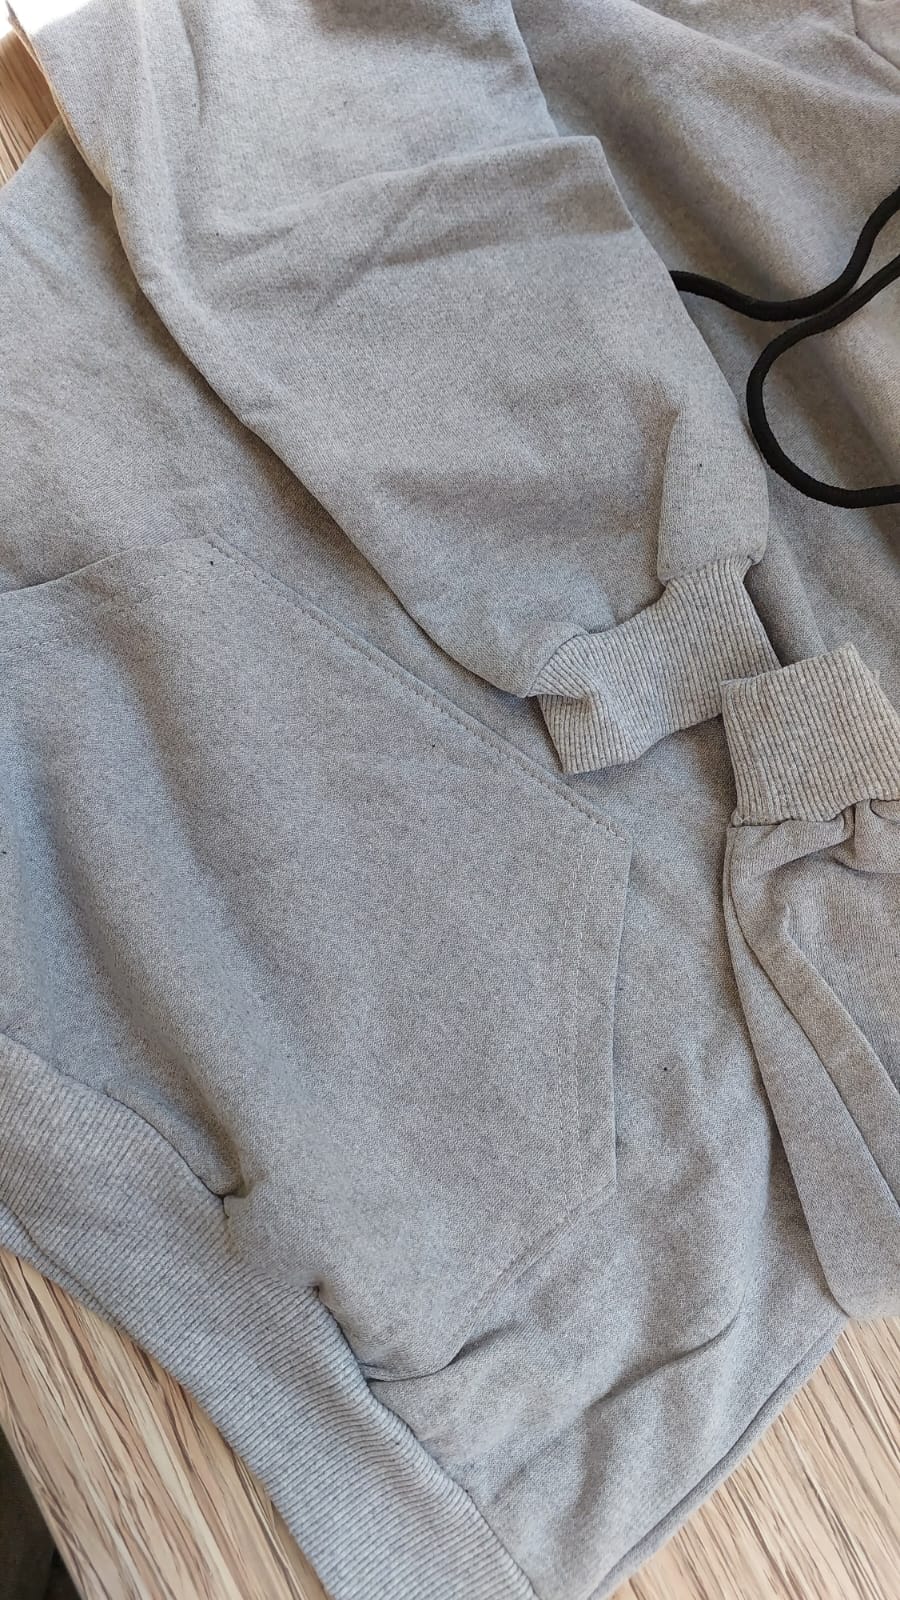 sweatshirt tasarla uygun fiyat yuvarlak yaka iki iplik 9